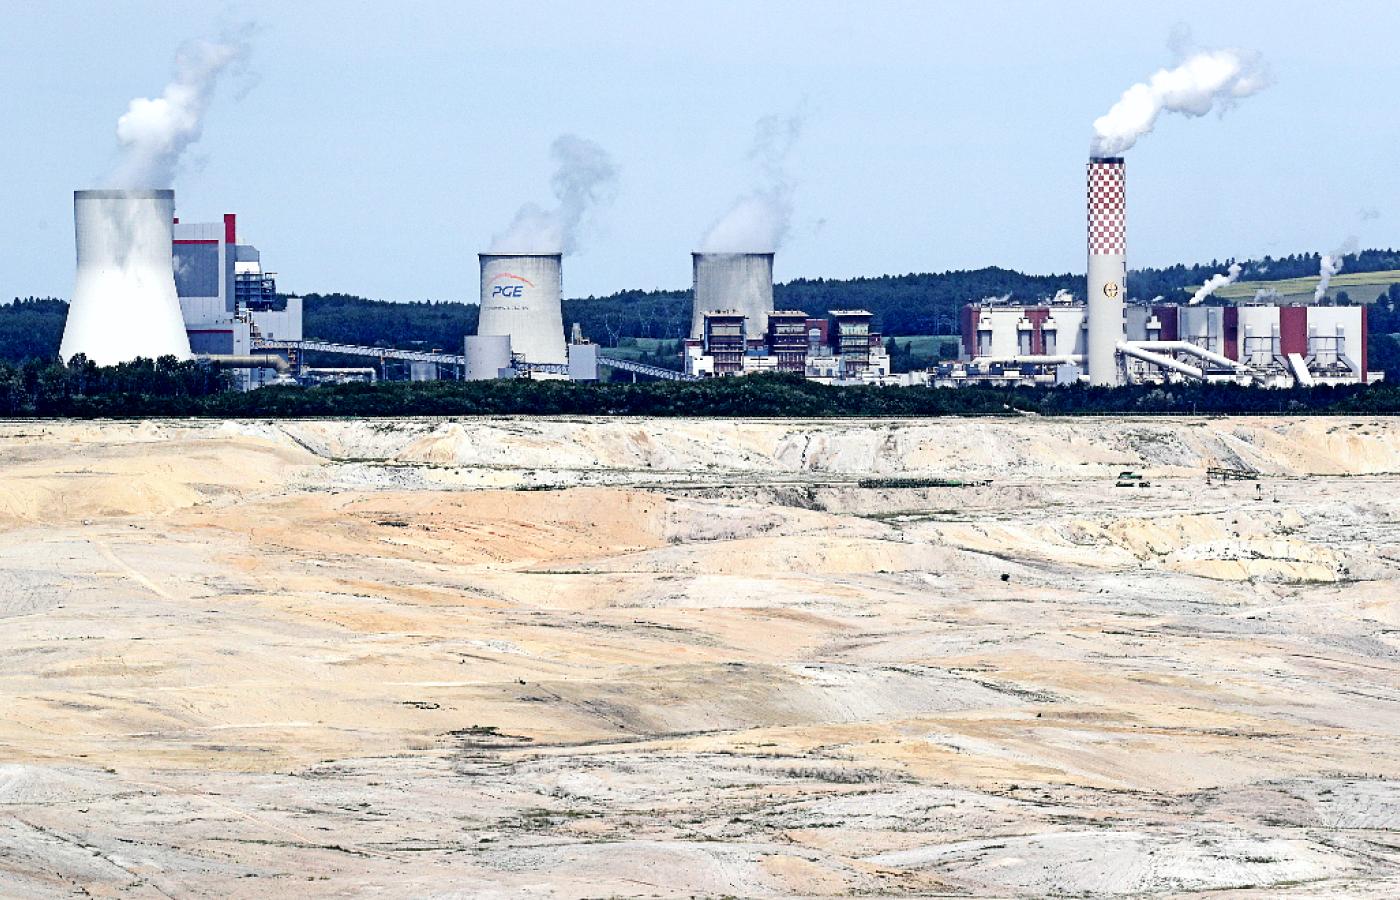 Kopalnia węgla brunatnego w Turowie